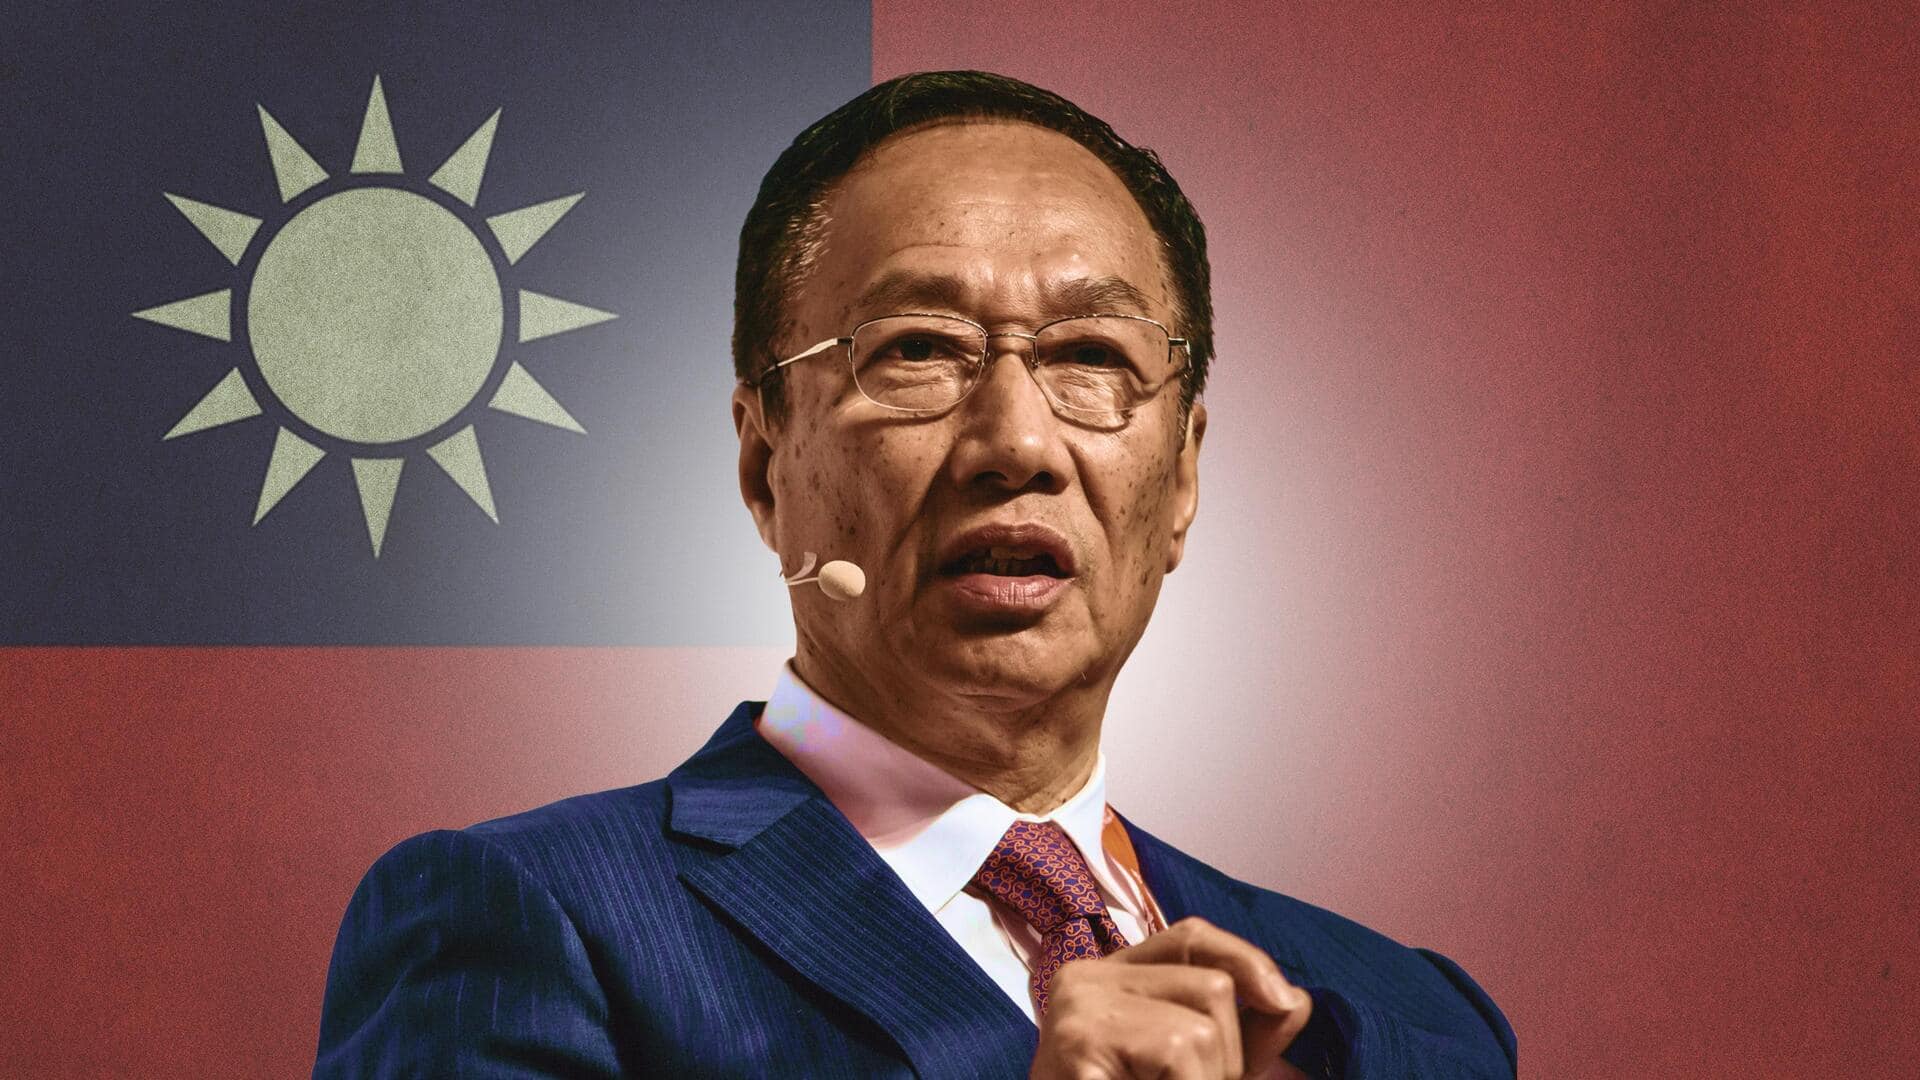 कौन हैं फॉक्सकॉन के संस्थापक टेरी गौ, जिन्होंने की ताइवान का राष्ट्रपति चुनाव लड़ने की घोषणा?